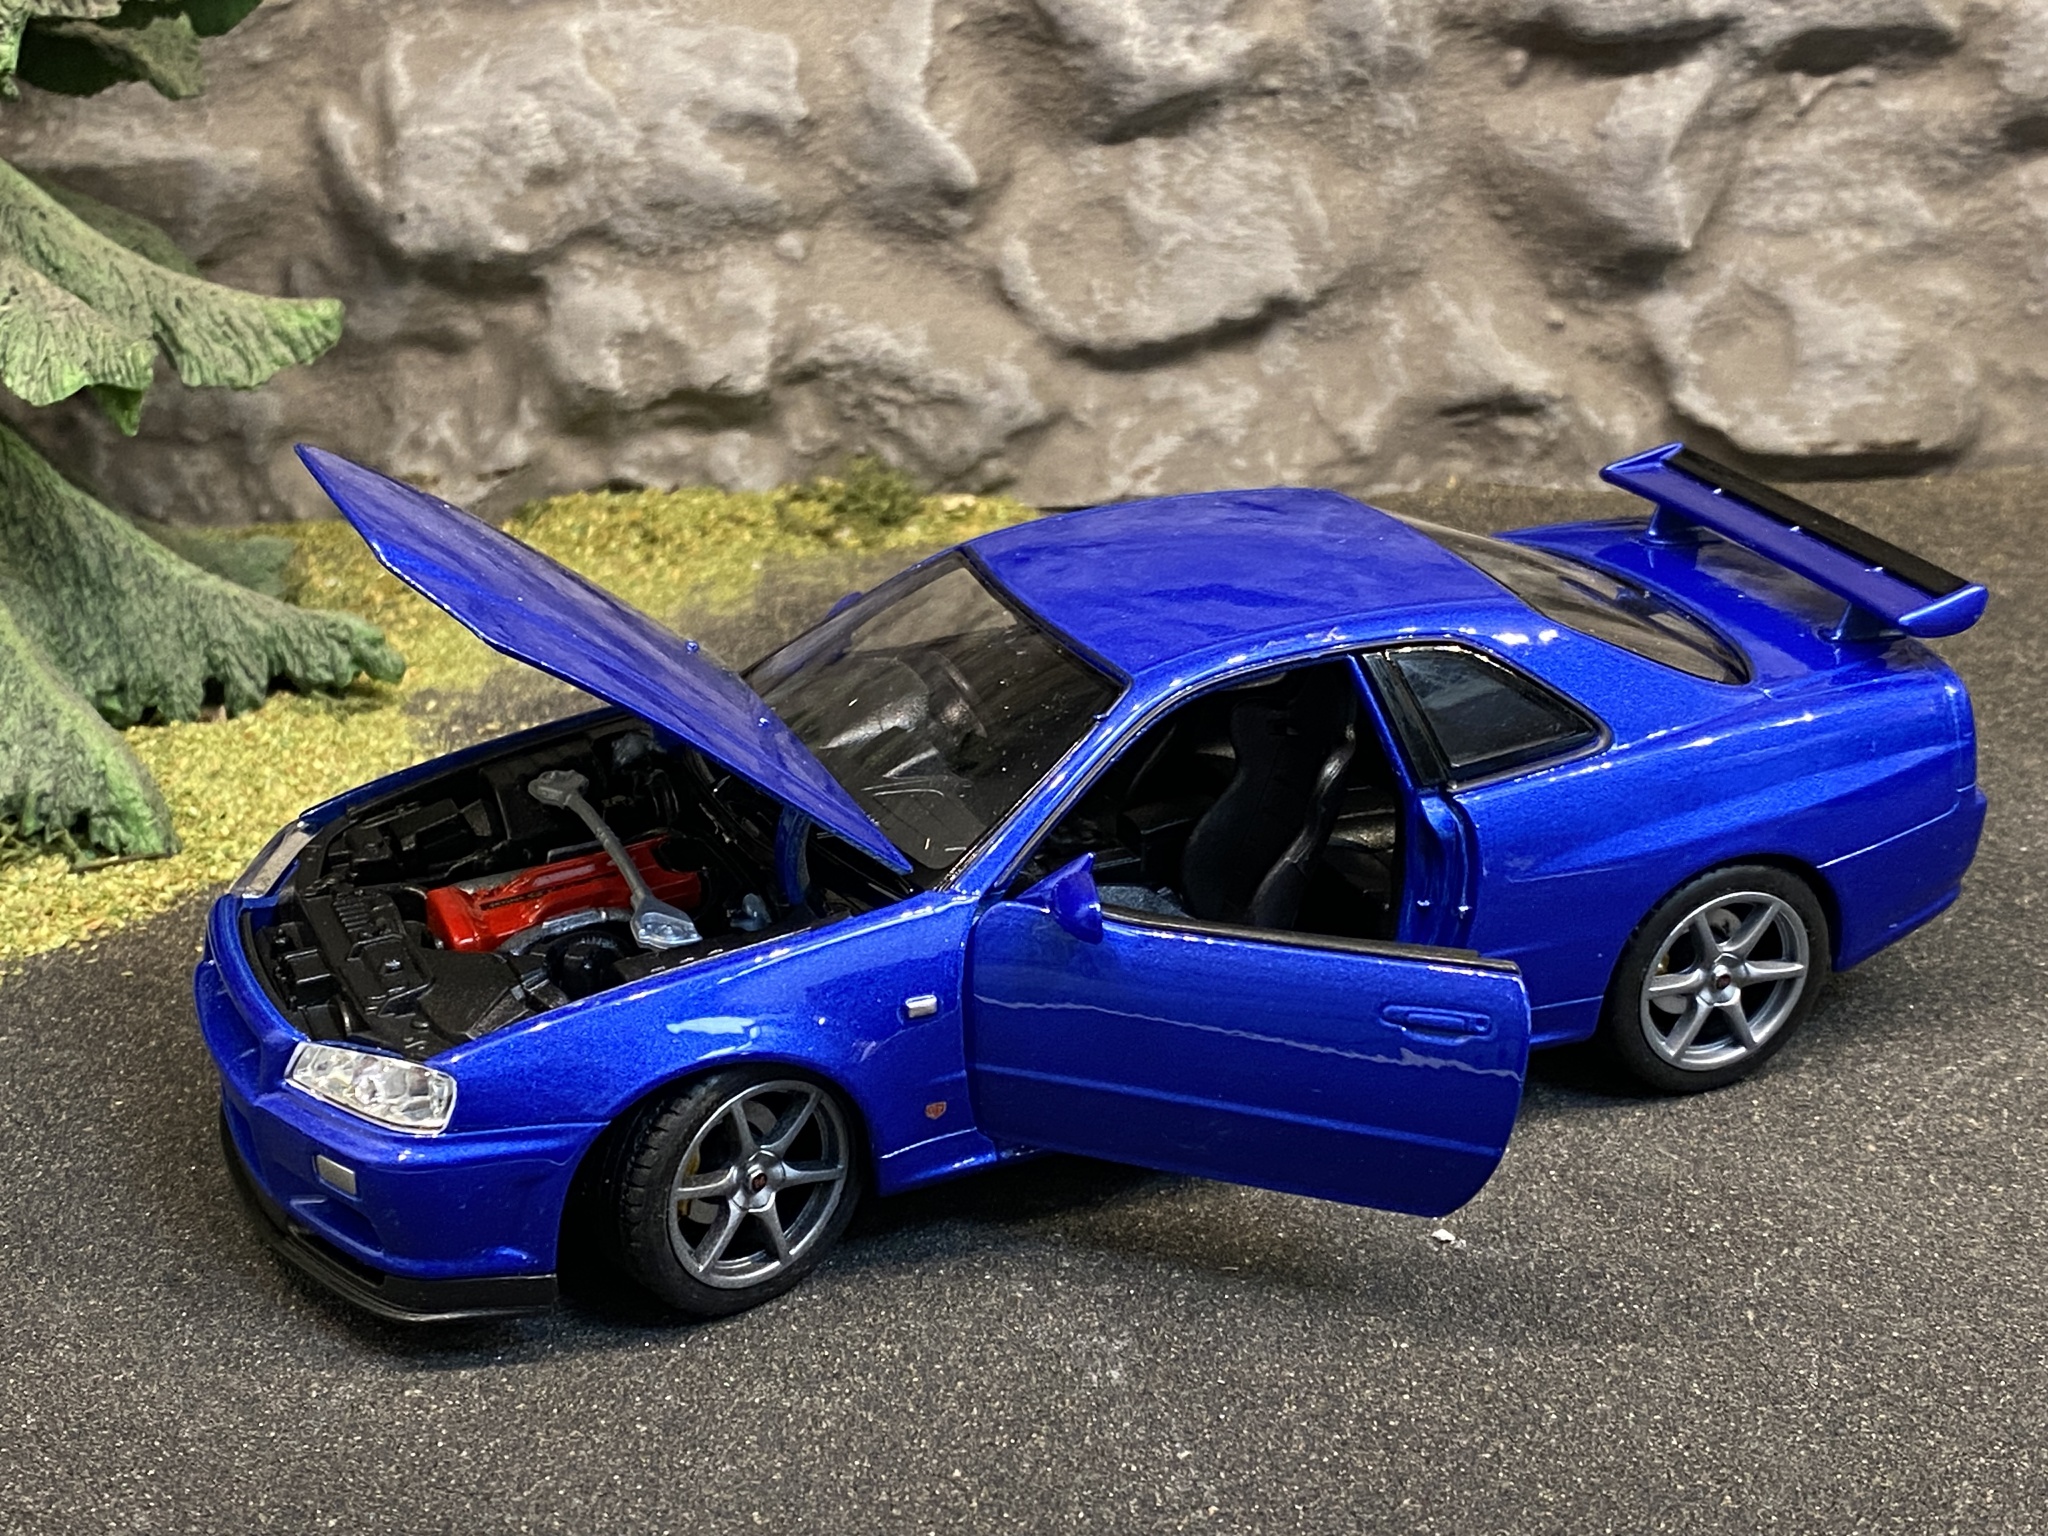 Skala 1/24 Nissan Skyline GT-R (R34), Blå från Nex models / Welly